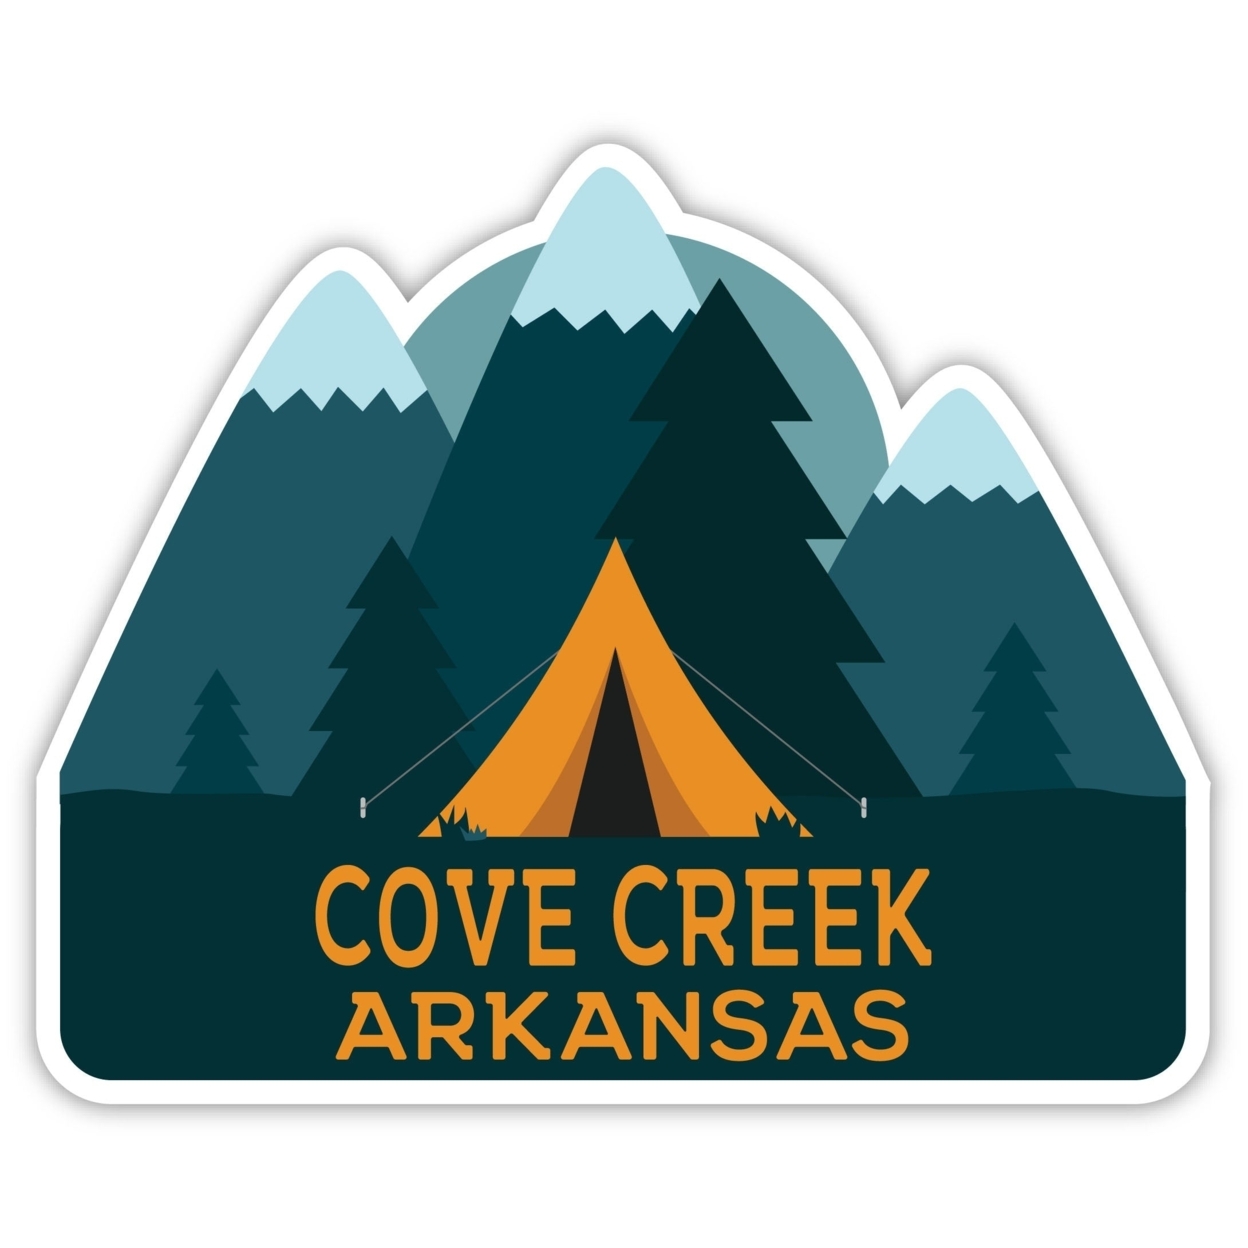 Cove Creek Arkansas Souvenir Decorative Stickers (Choose Theme And Size) - Single Unit, 6-Inch, Tent